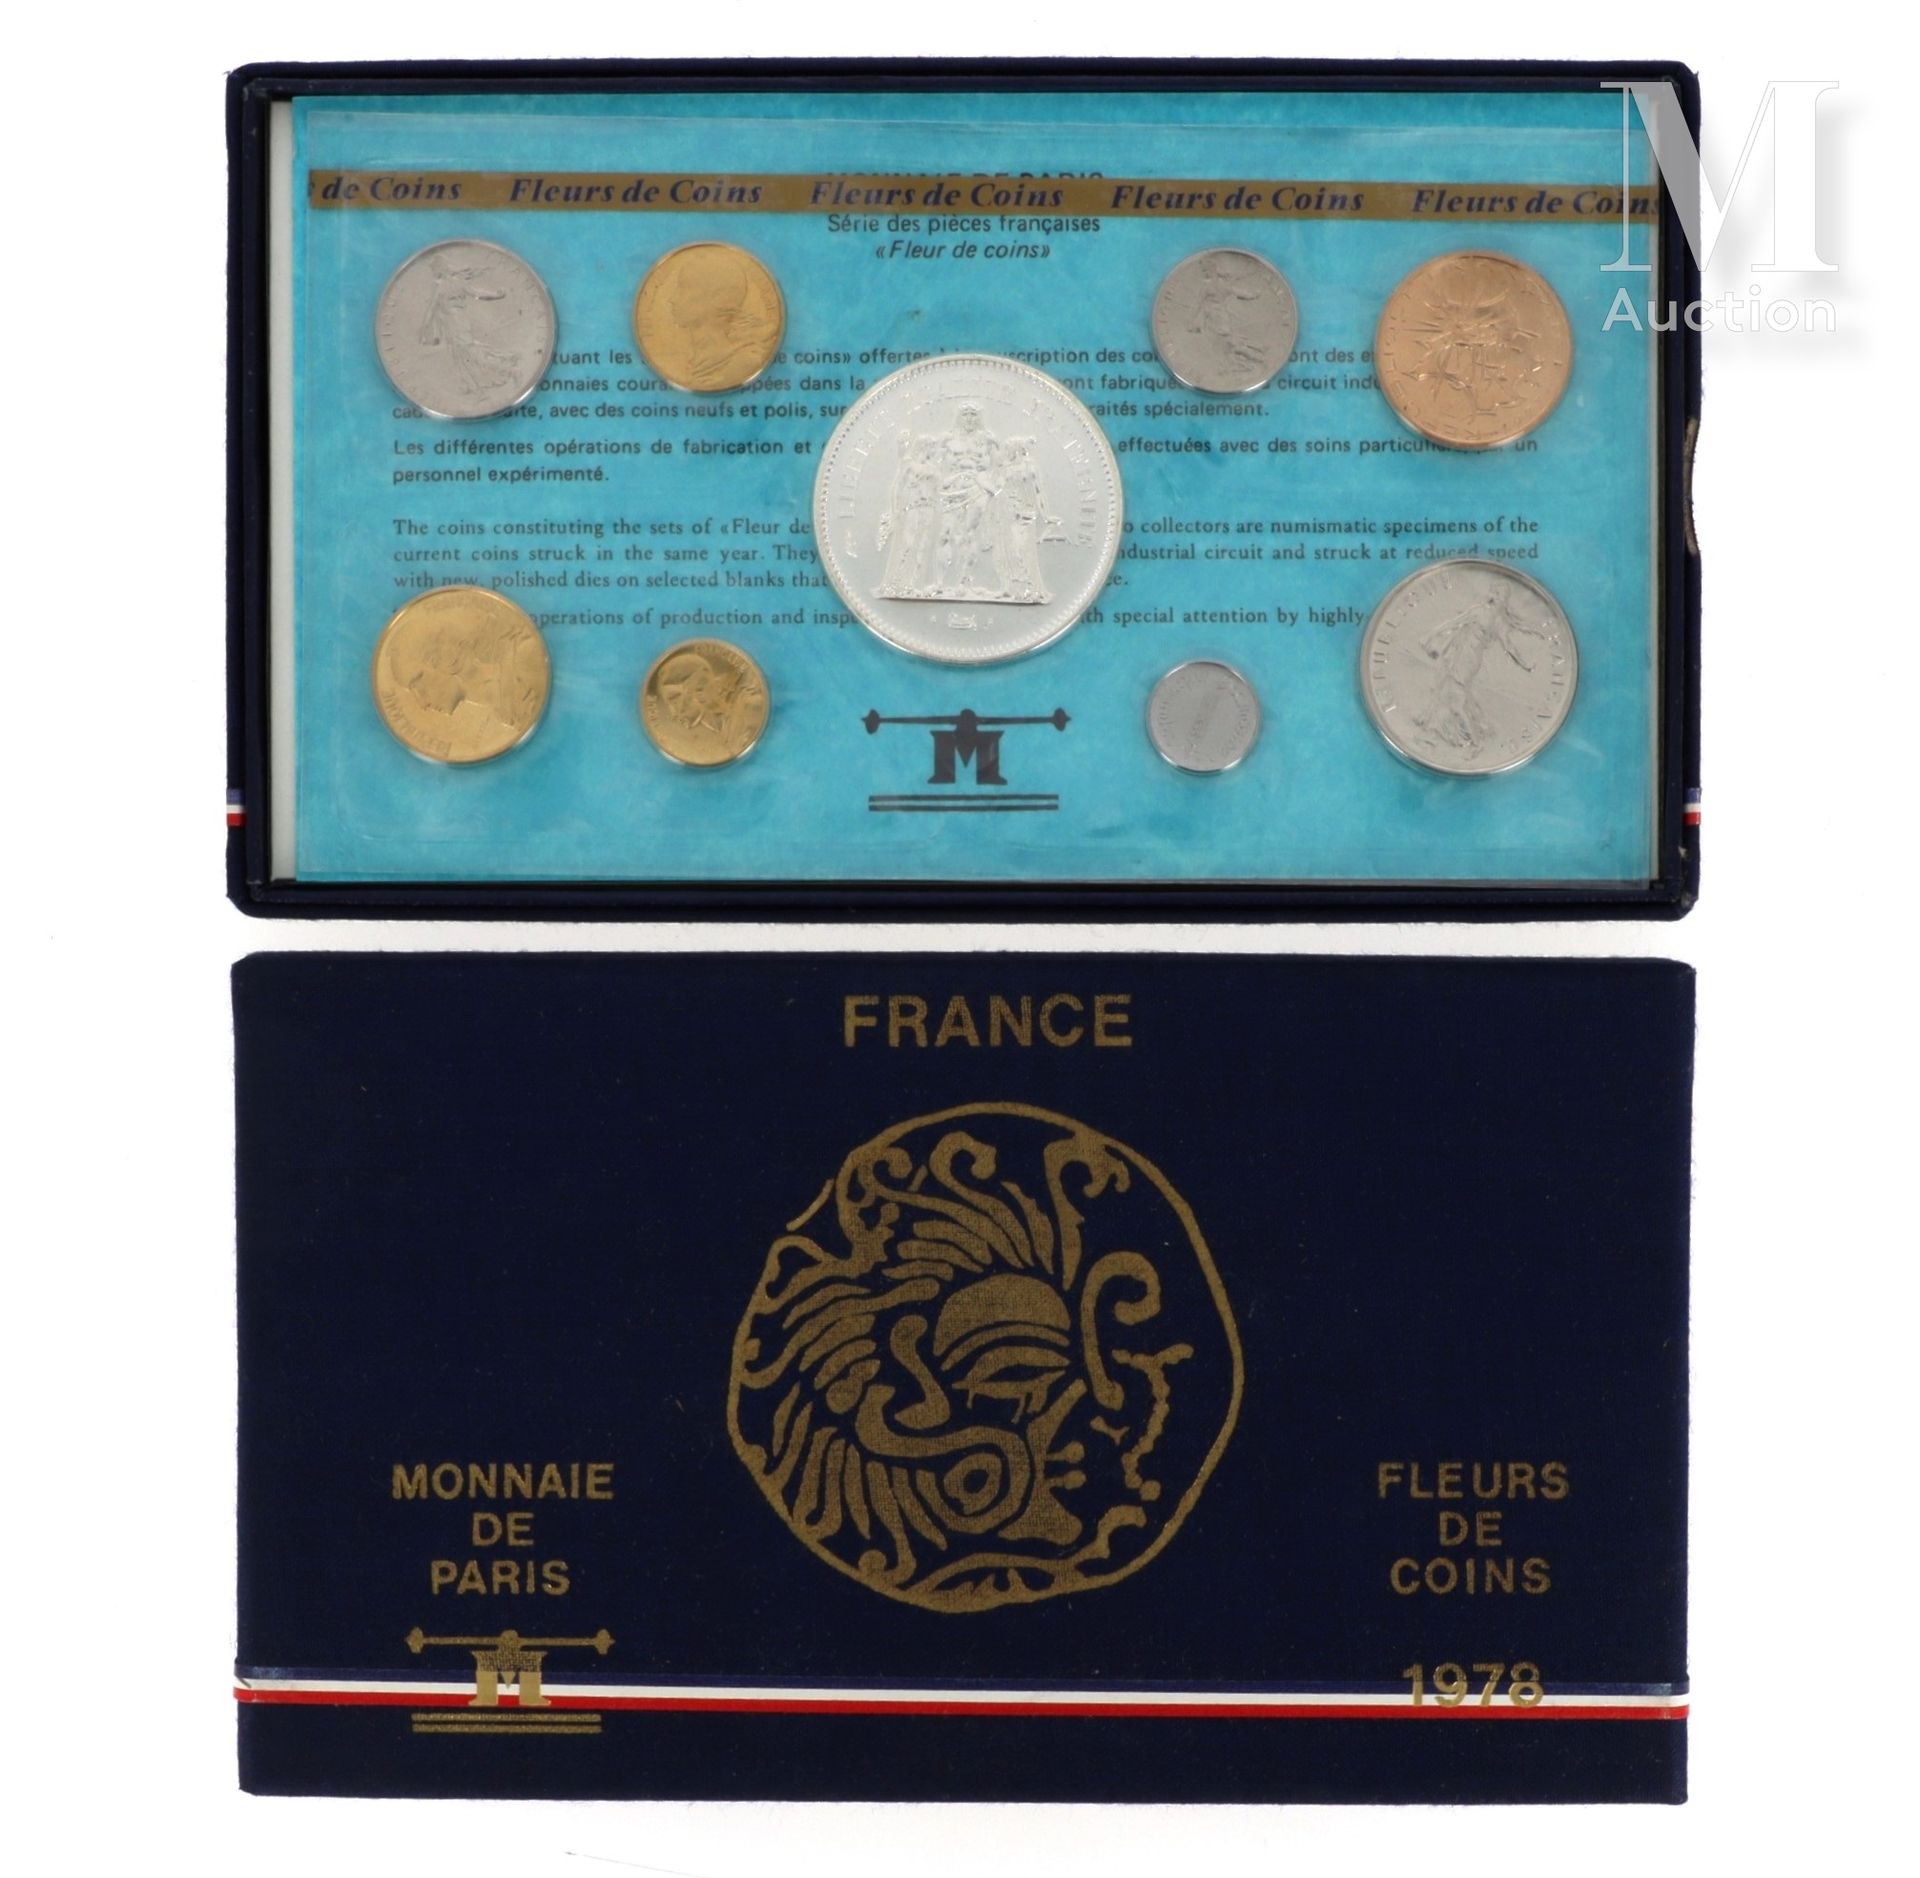 16 coffrets fleurs de coins MONNAIE DE PARIS

16 coffrets de fleurs de coins :

&hellip;